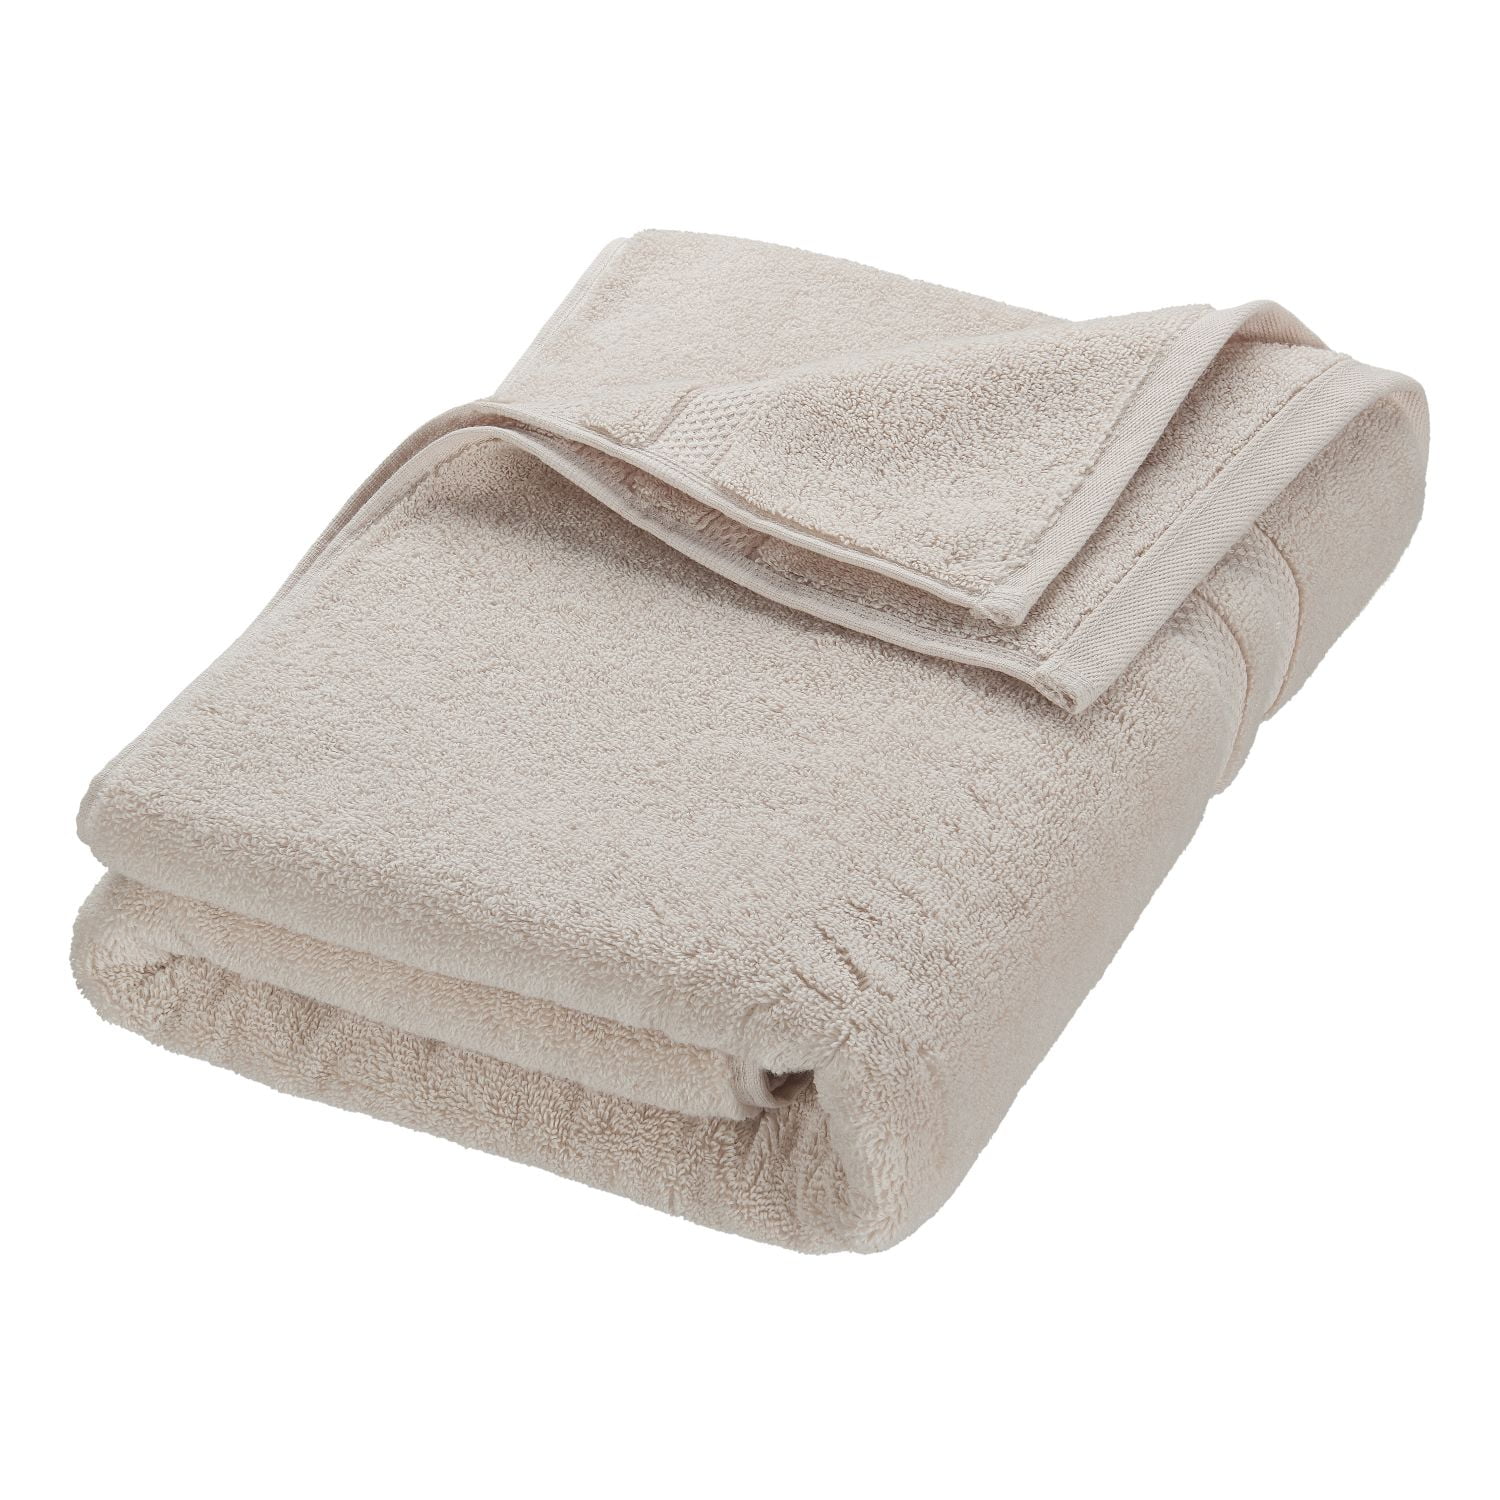 Bath Sheet & Bath Towel Set Plush Turkish Cotton Towels 8 pc Premium Quick Dry 